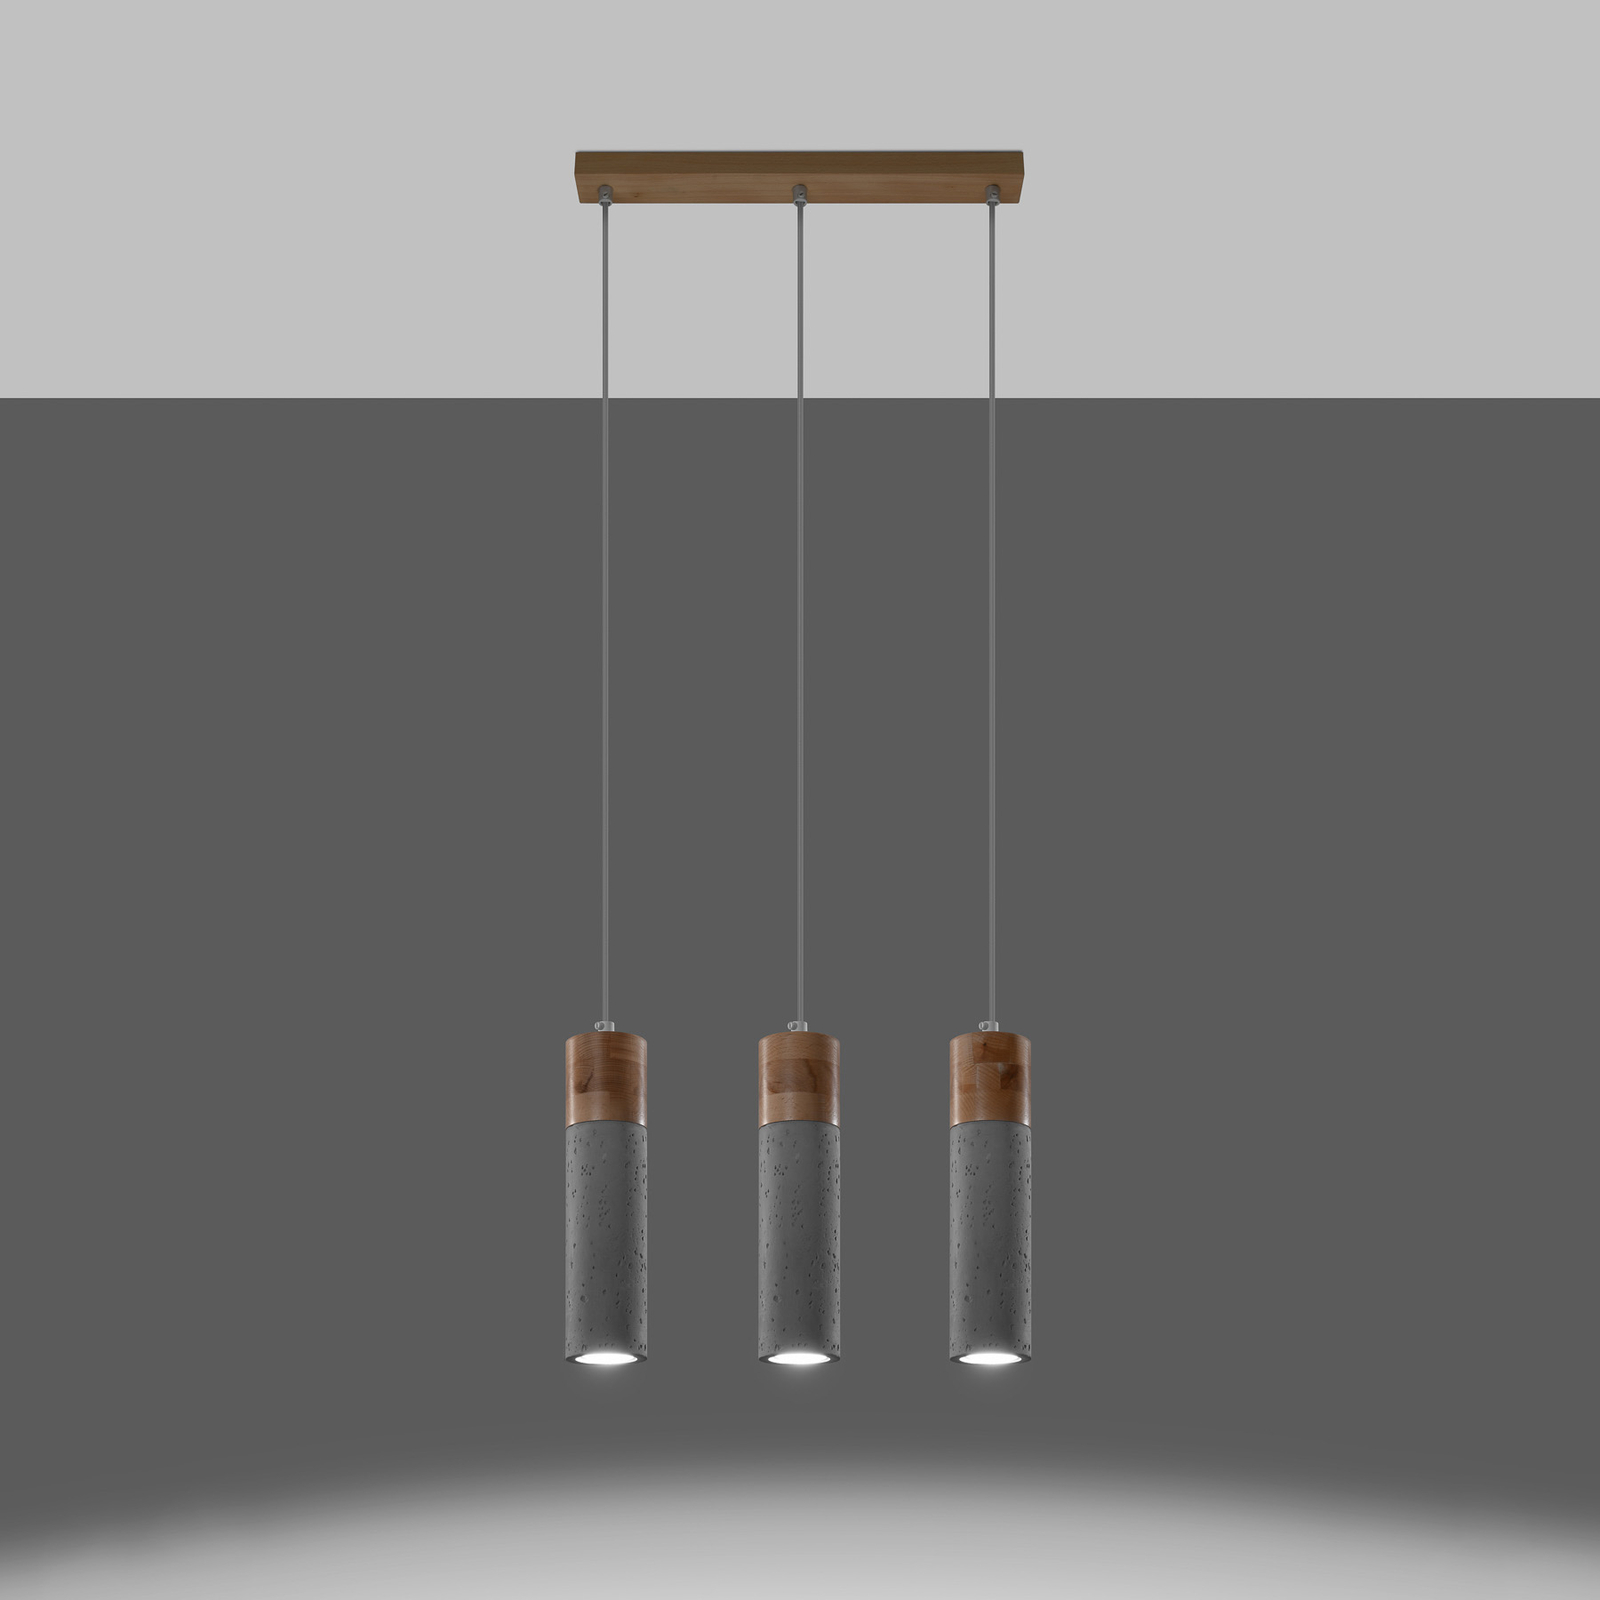 Envostar Persian Indigo hanglamp 3-lamp beton/hout